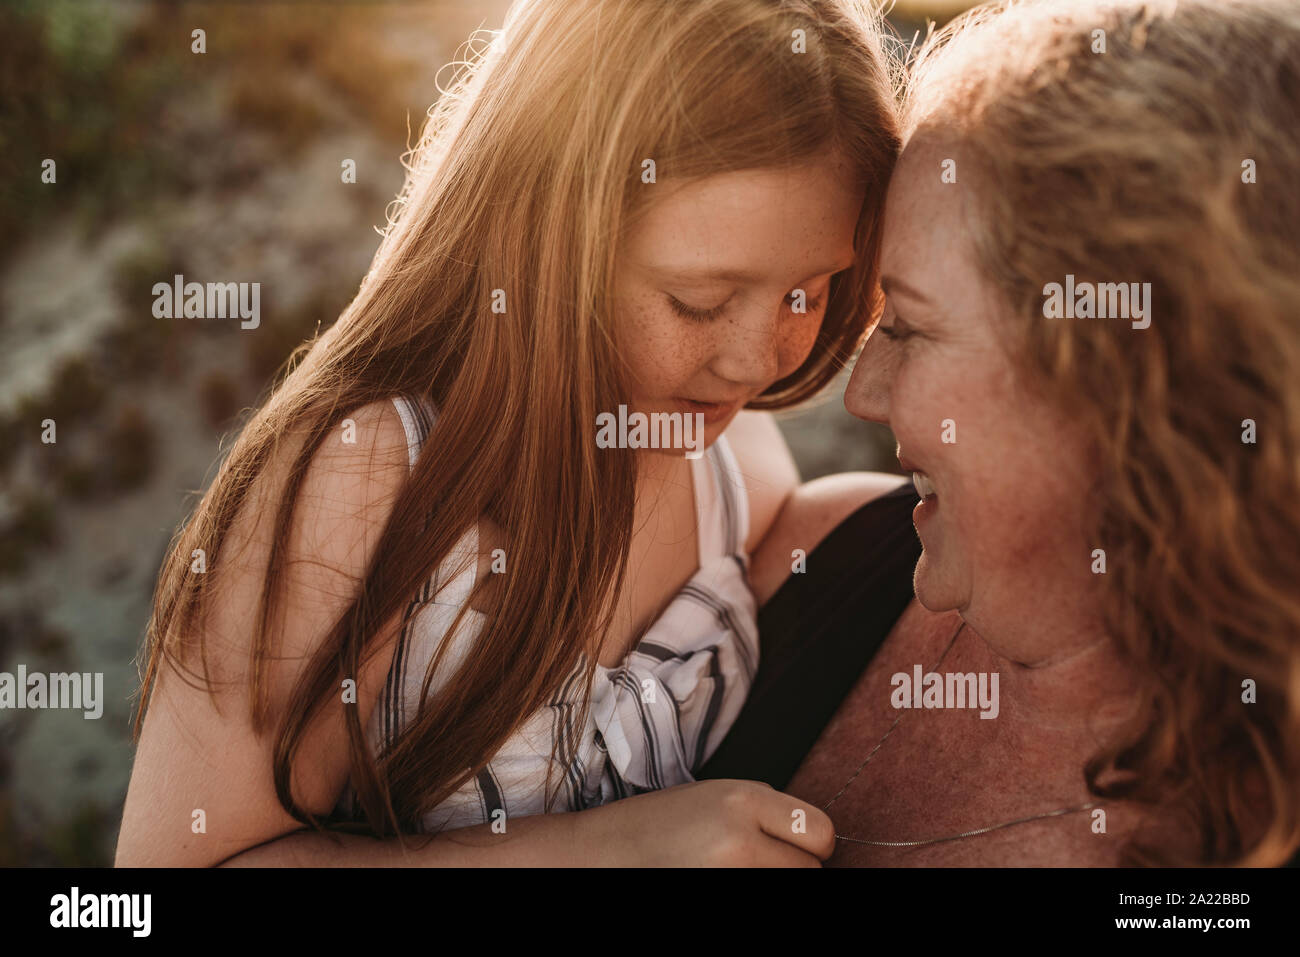 Vista lateral de la madre y la hija de edad primaria pelirroja al atardecer Foto de stock